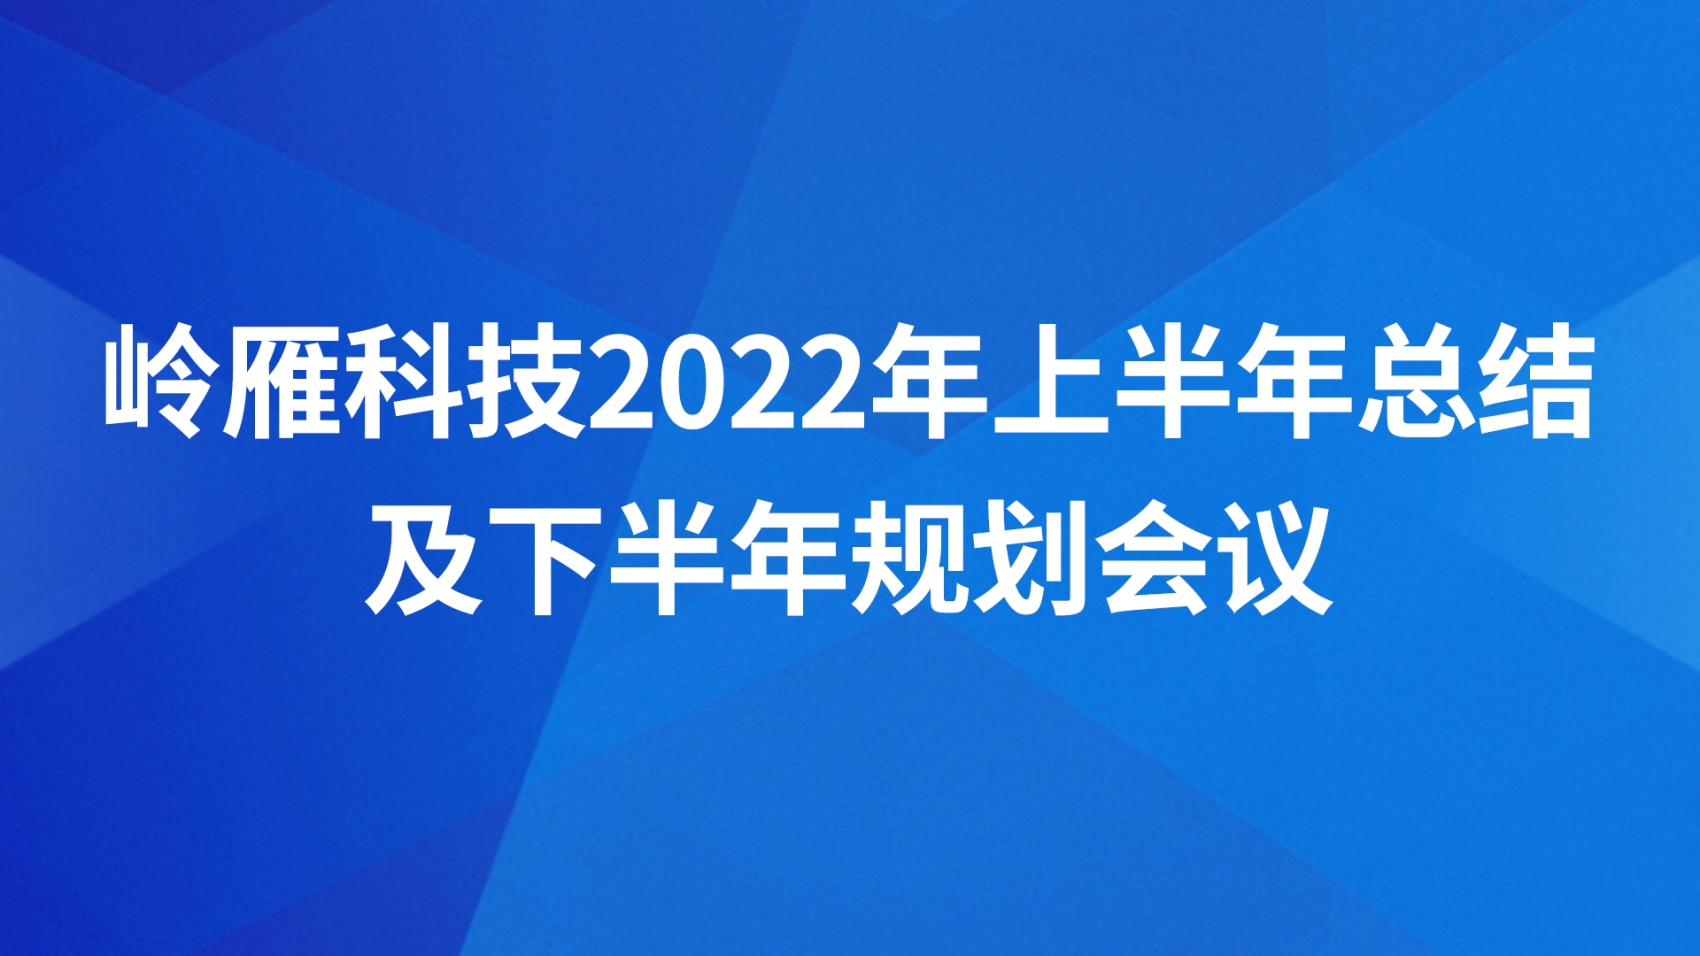 岭雁科技2022年上半年总结及下半年规划会议